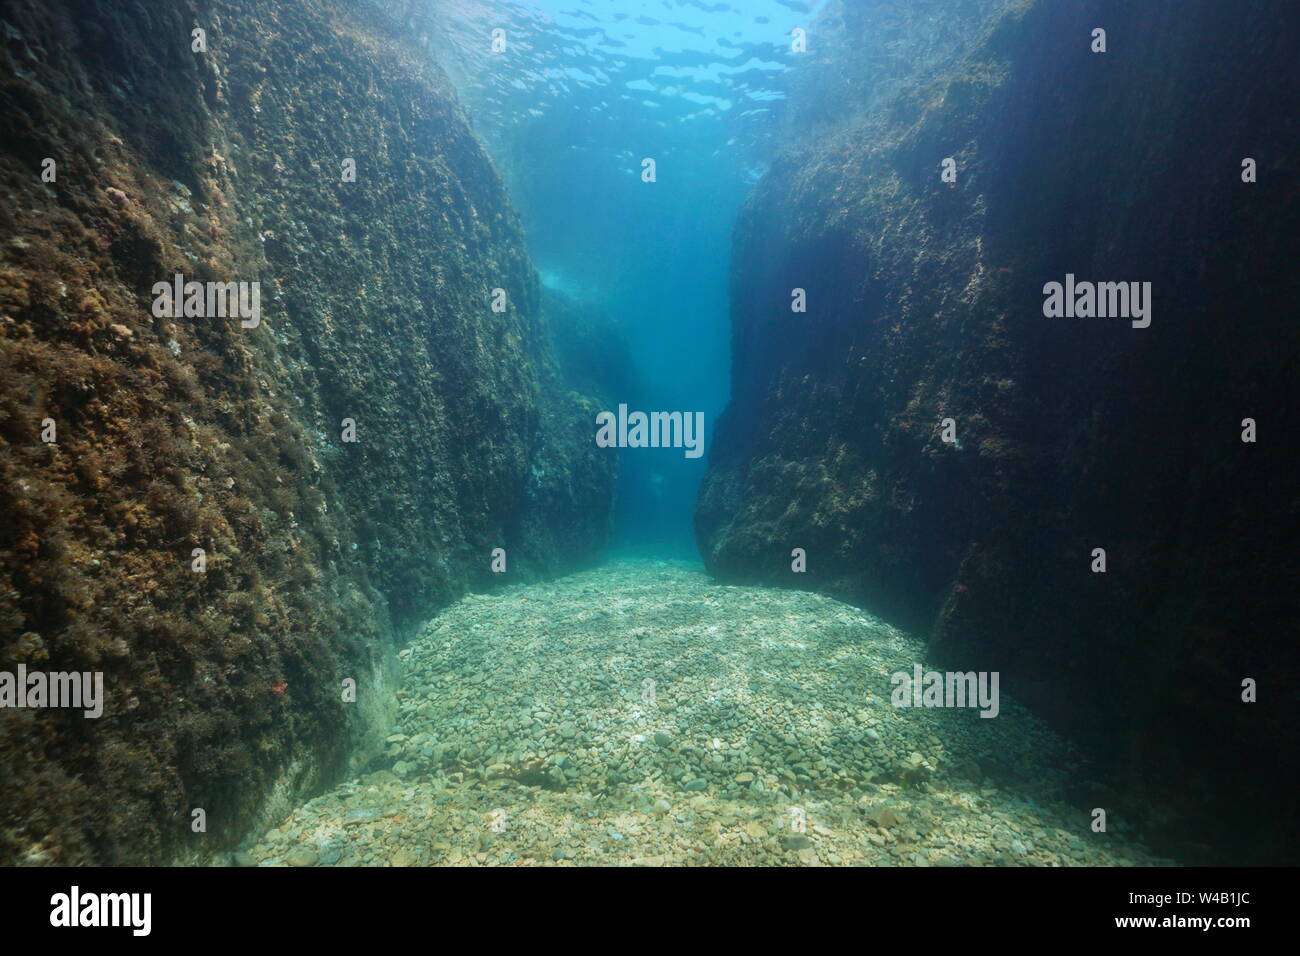 Un passage entre de gros rochers sous l'eau, mer Méditerranée, Espagne, Costa Brava, Aigua Xelida, Palafrugell, Catalogne Banque D'Images